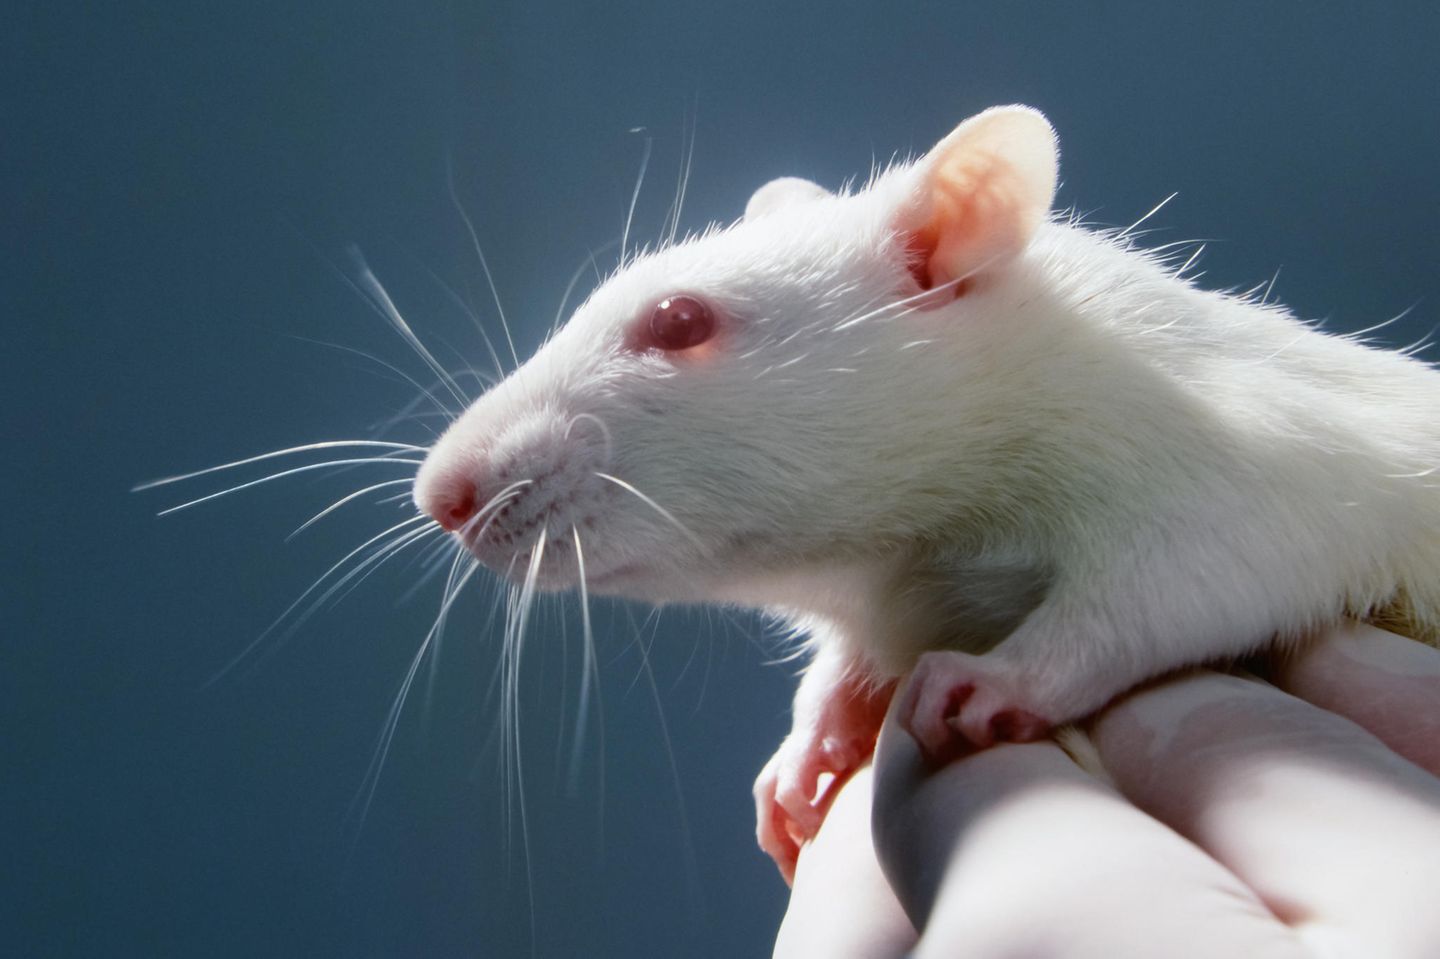 Viele Tiere sterben in Versuchen, die für die Zulassung von Medikamenten vorgeschrieben sind